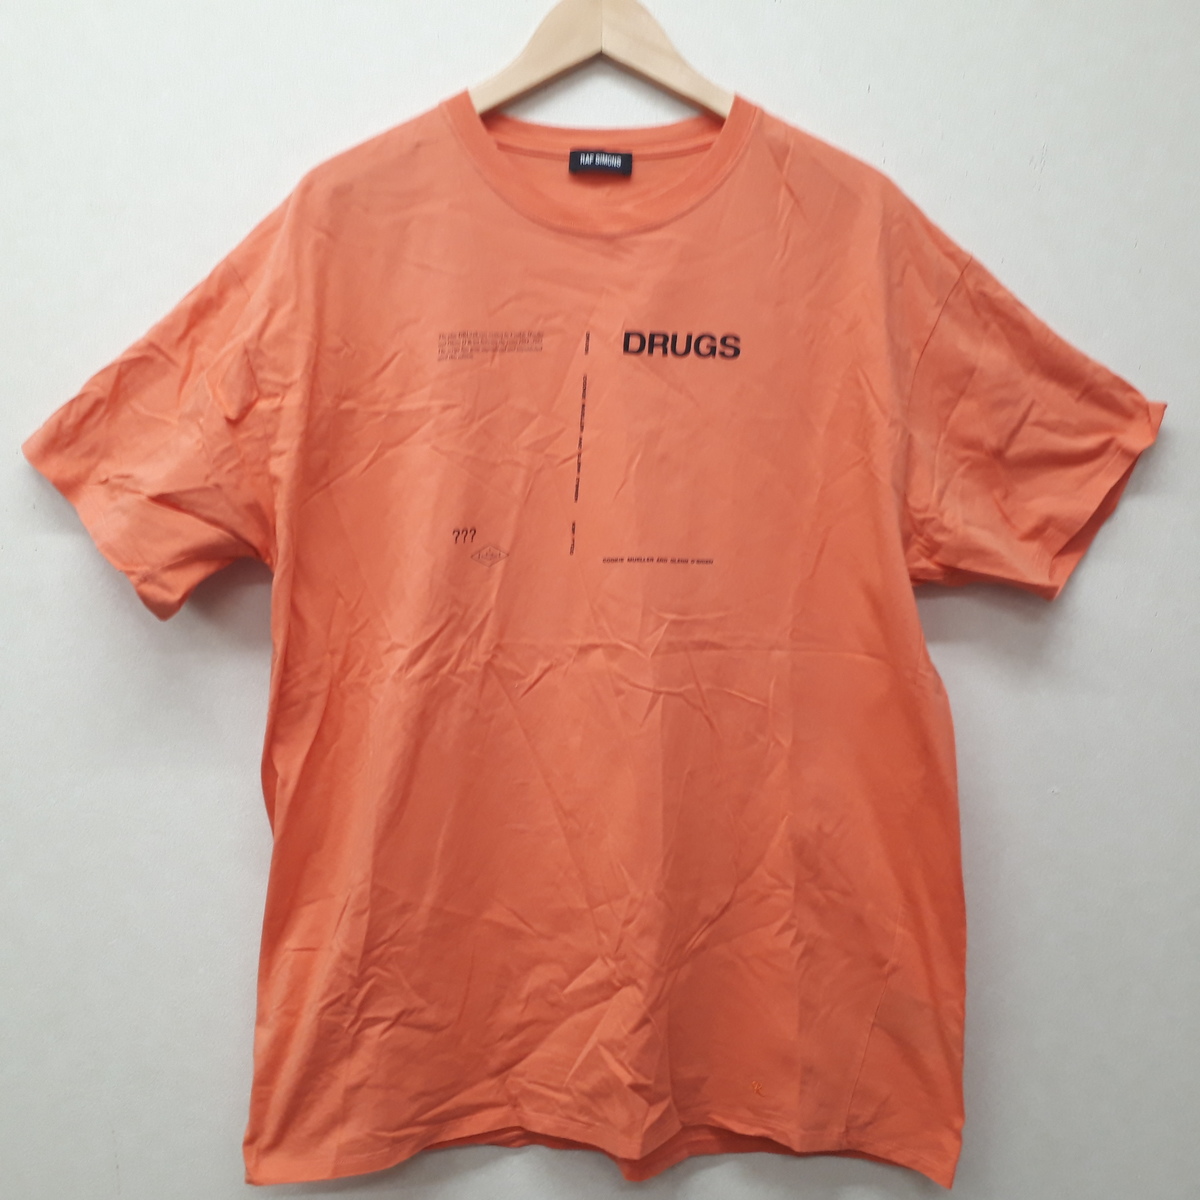 ラフシモンズの2018年 DRUGS プリント Tシャツの買取実績です。